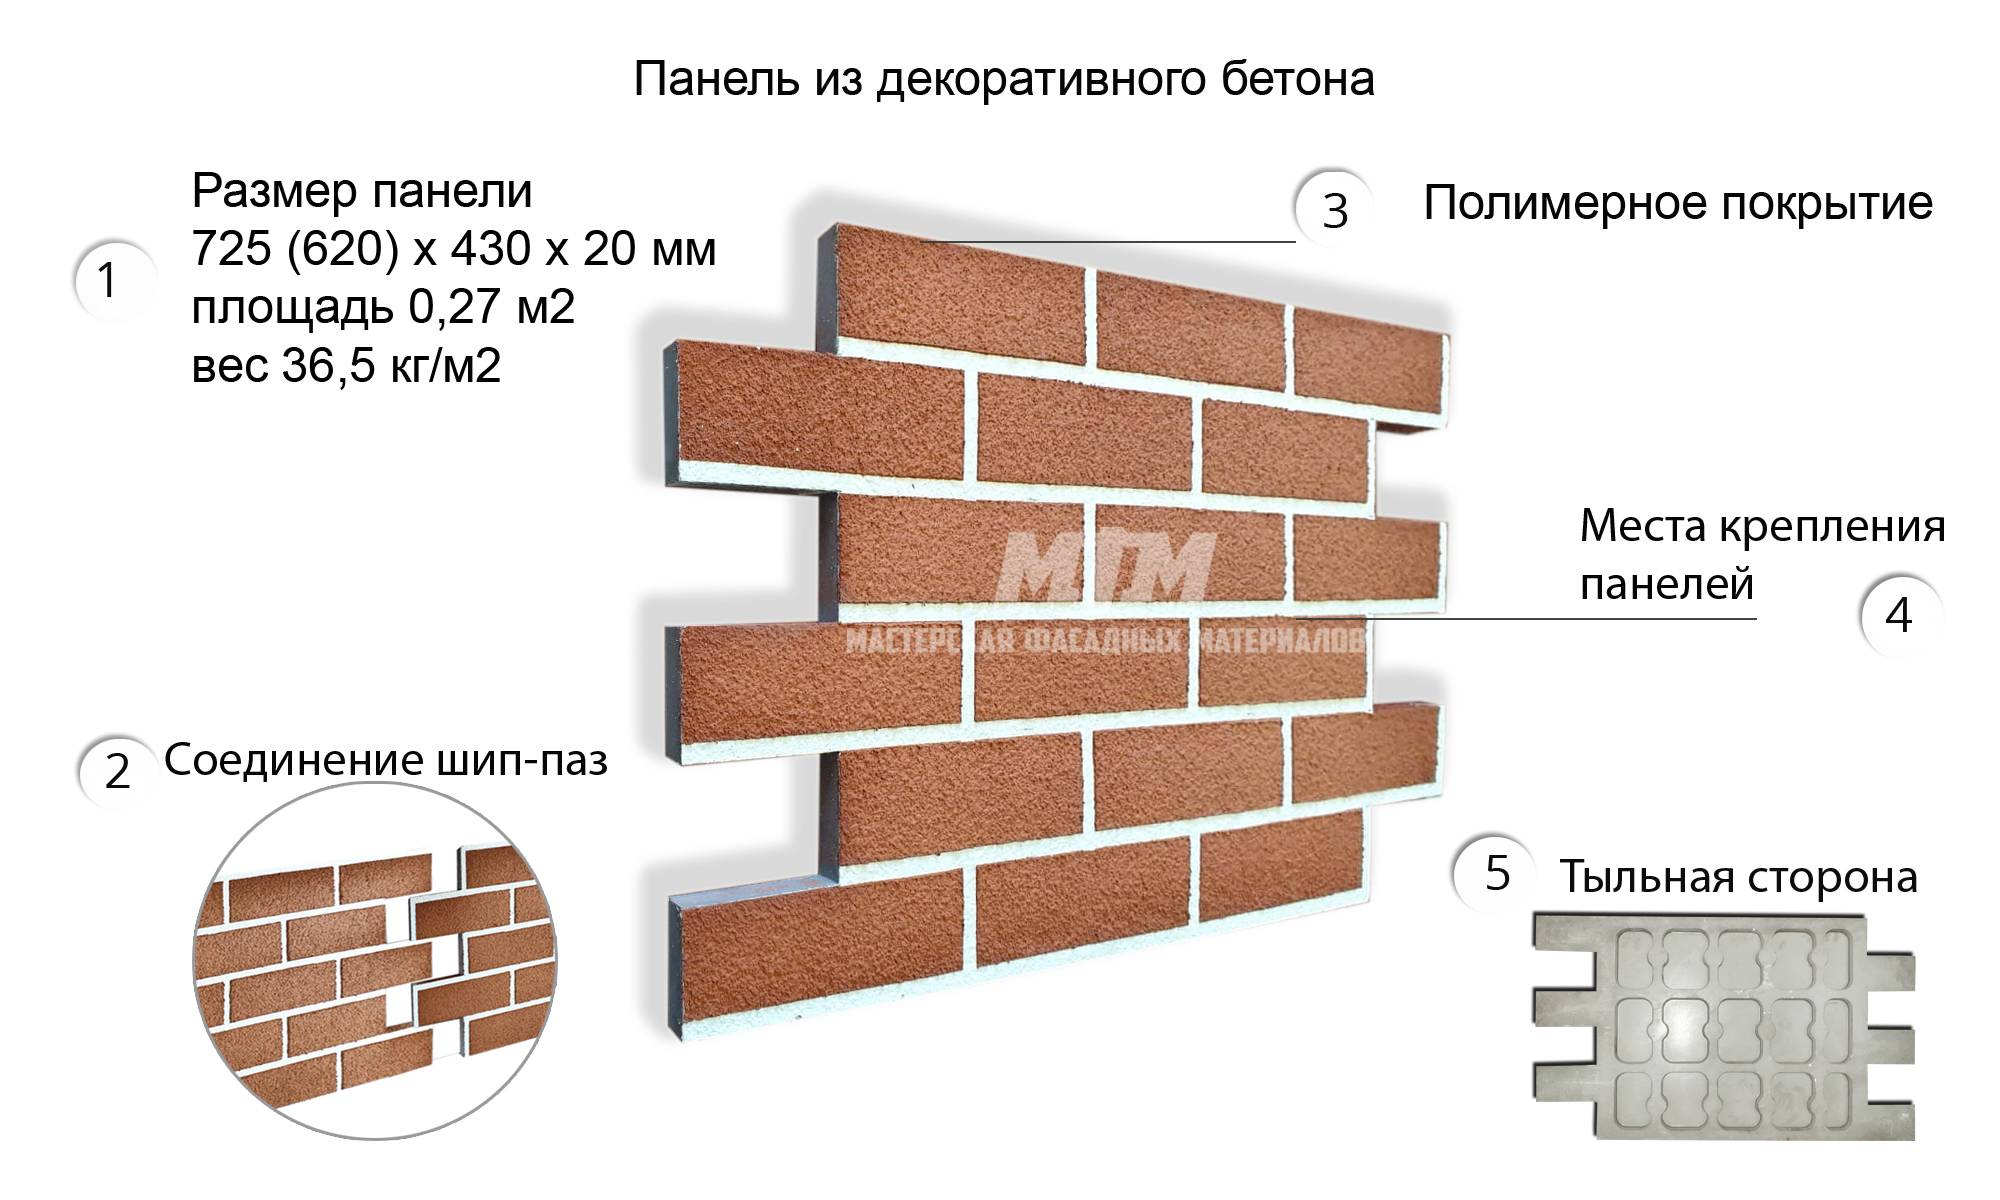 Клинкерные панели для фасада с утеплителем: плюсы и минусы, цены